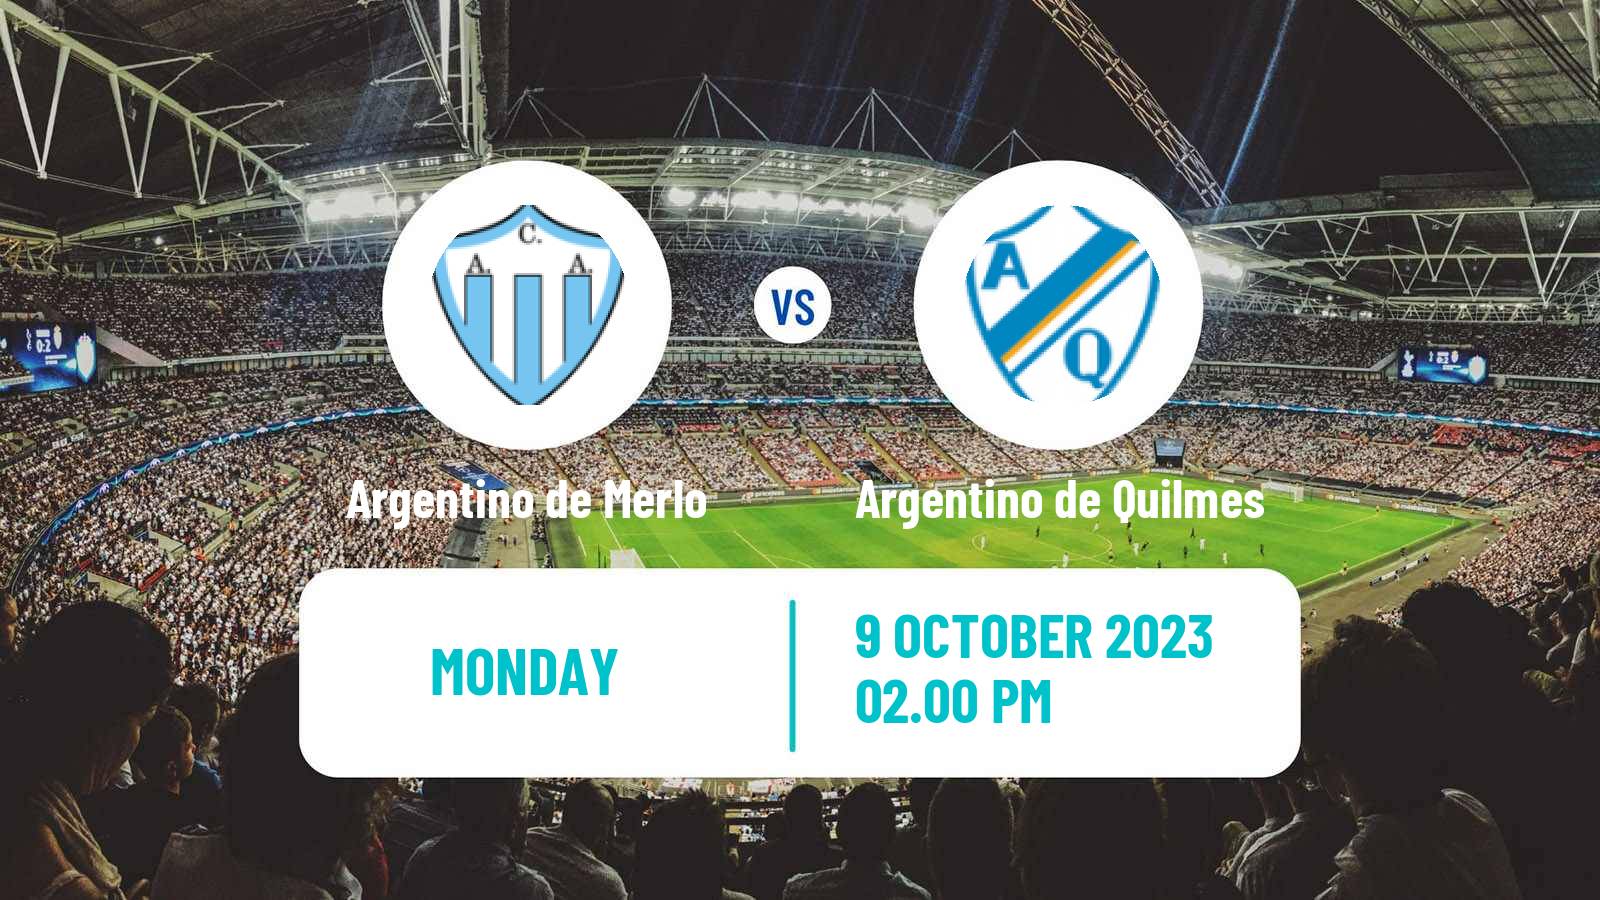 Deportivo Armenio vs CA San Miguel Prediction and Picks today 3